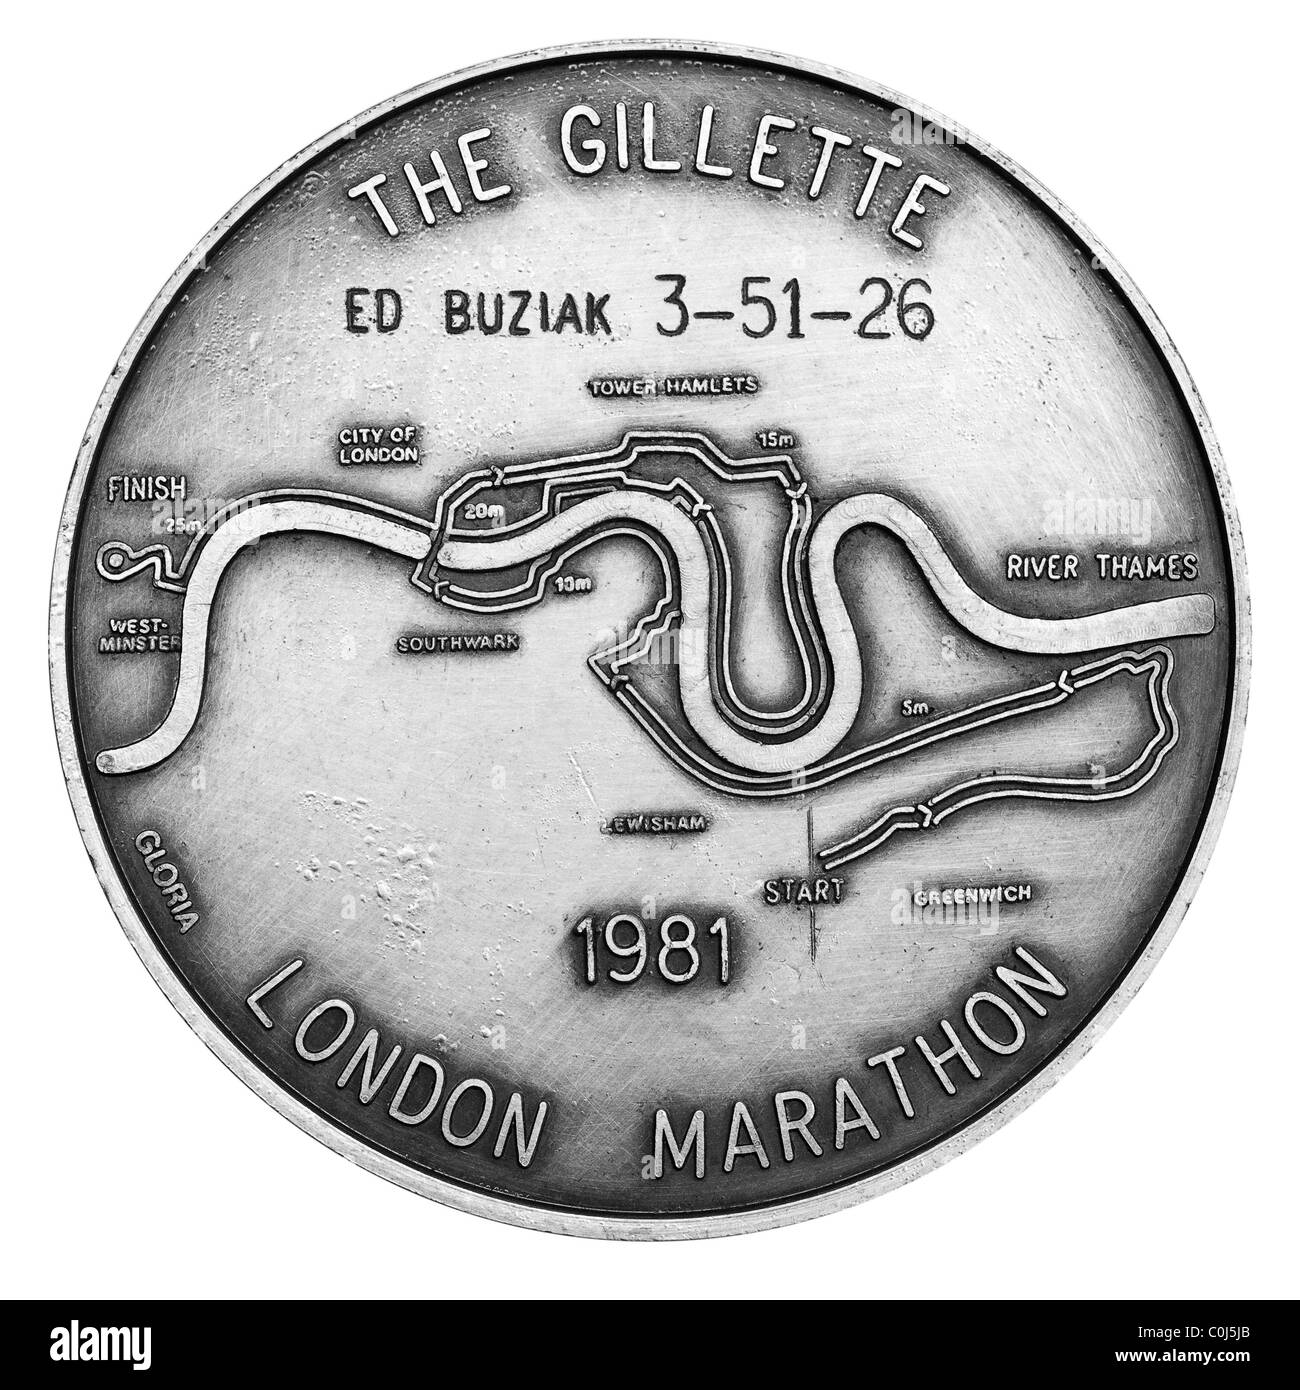 1981 The Gillette London Marathon finisher's medal - UK. Stock Photo